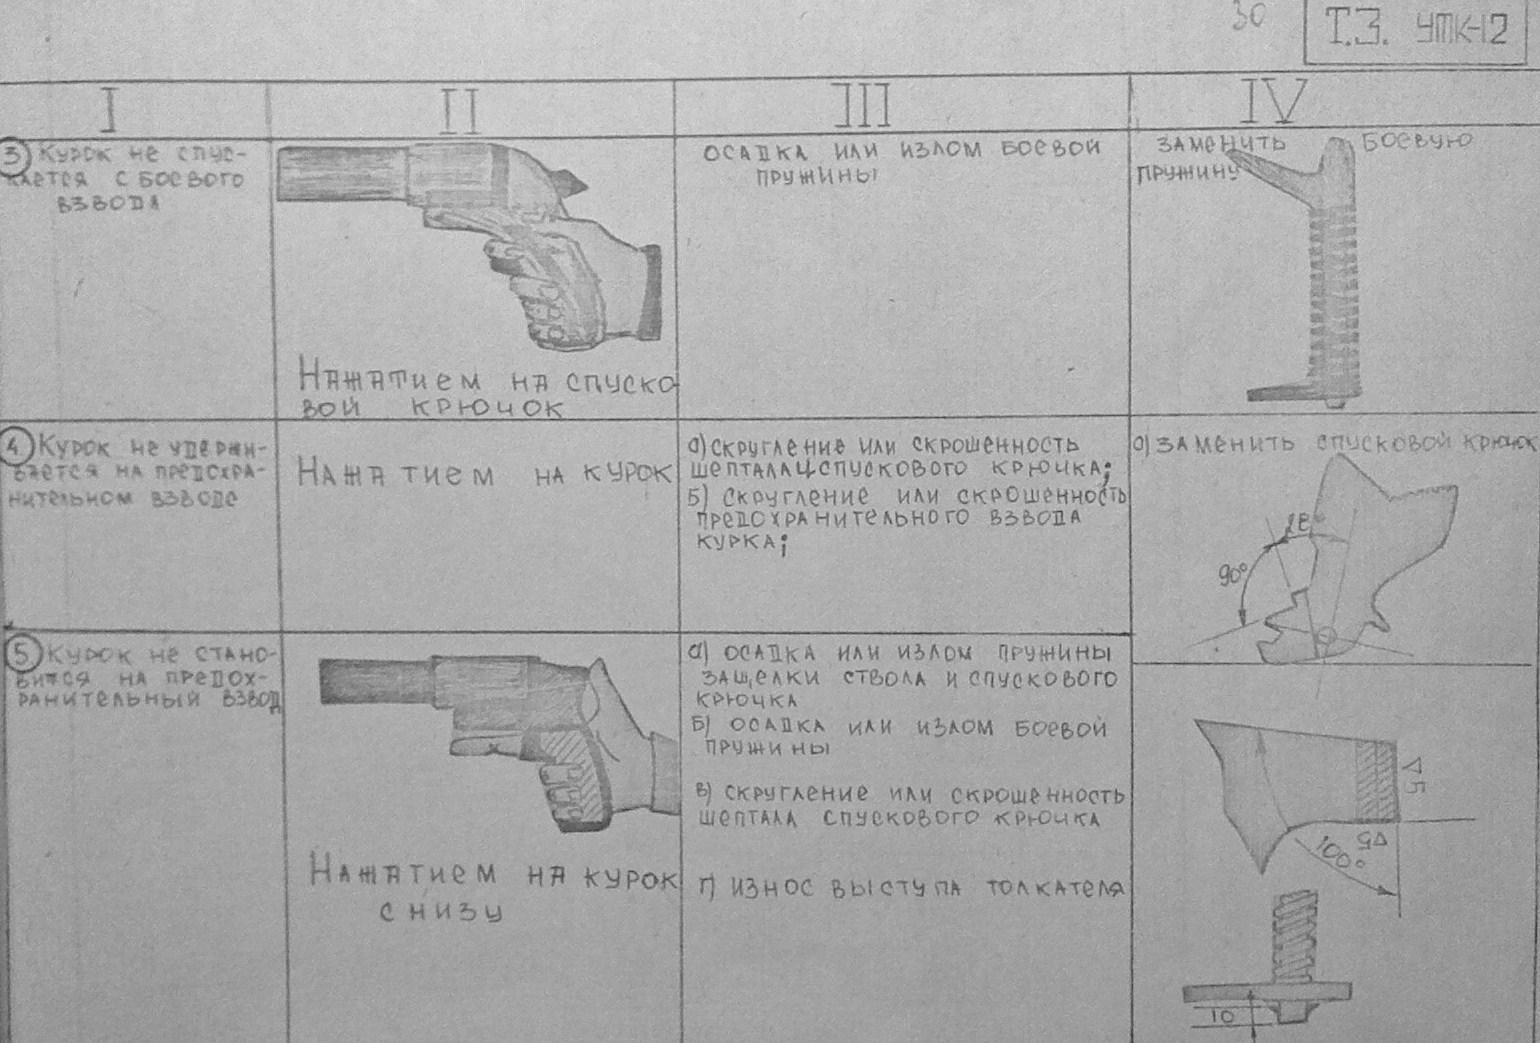 Технологическая карта пистолета Макарова из дерева с размерами